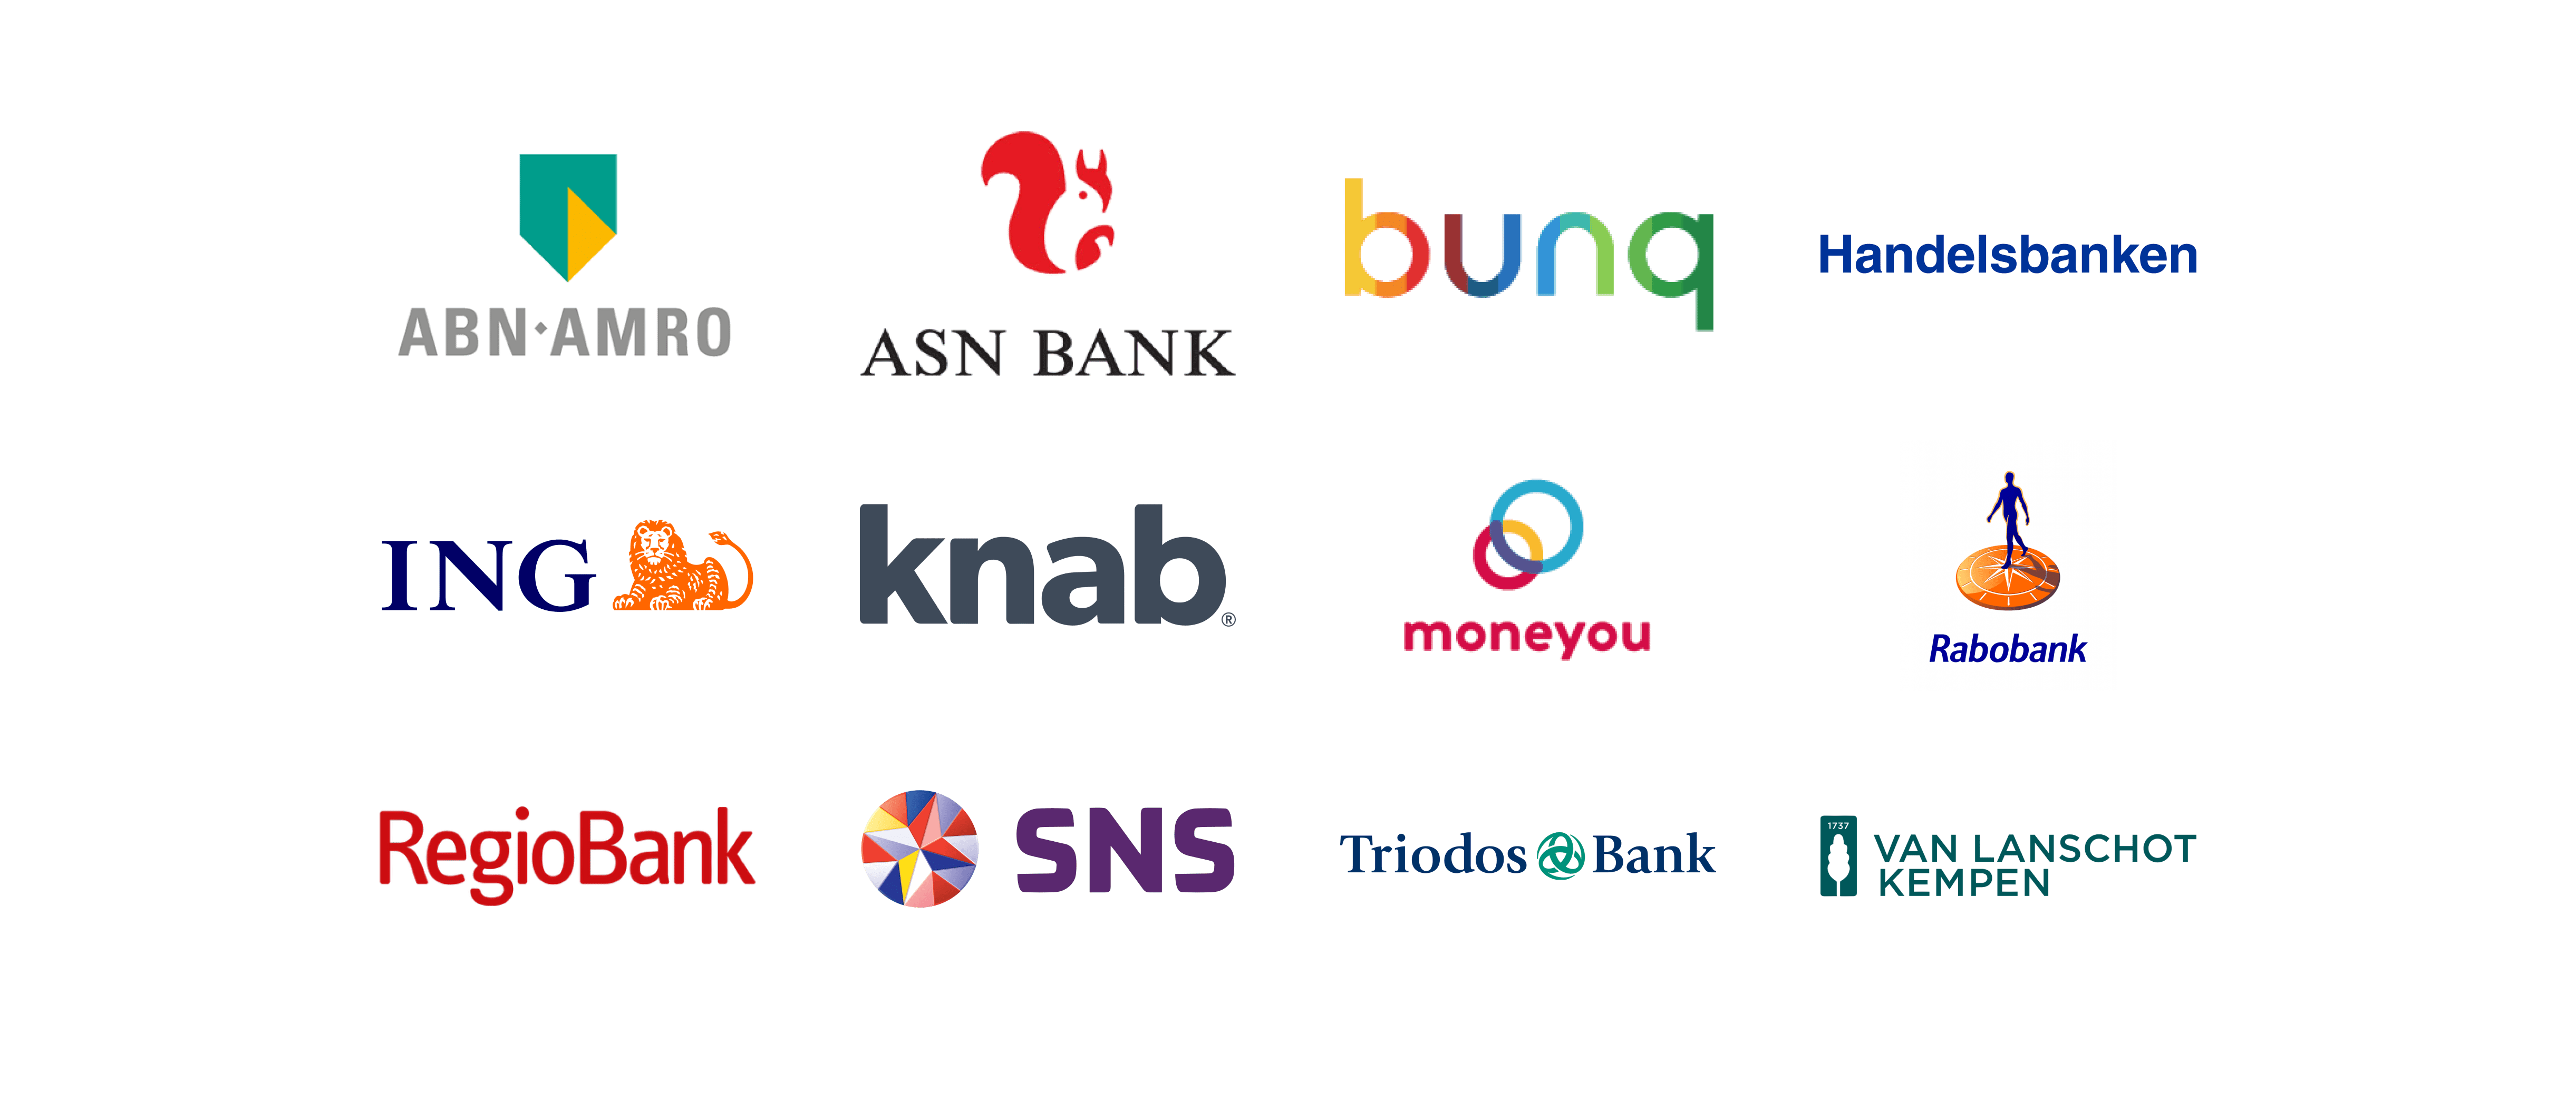 populaire Banken in nederland